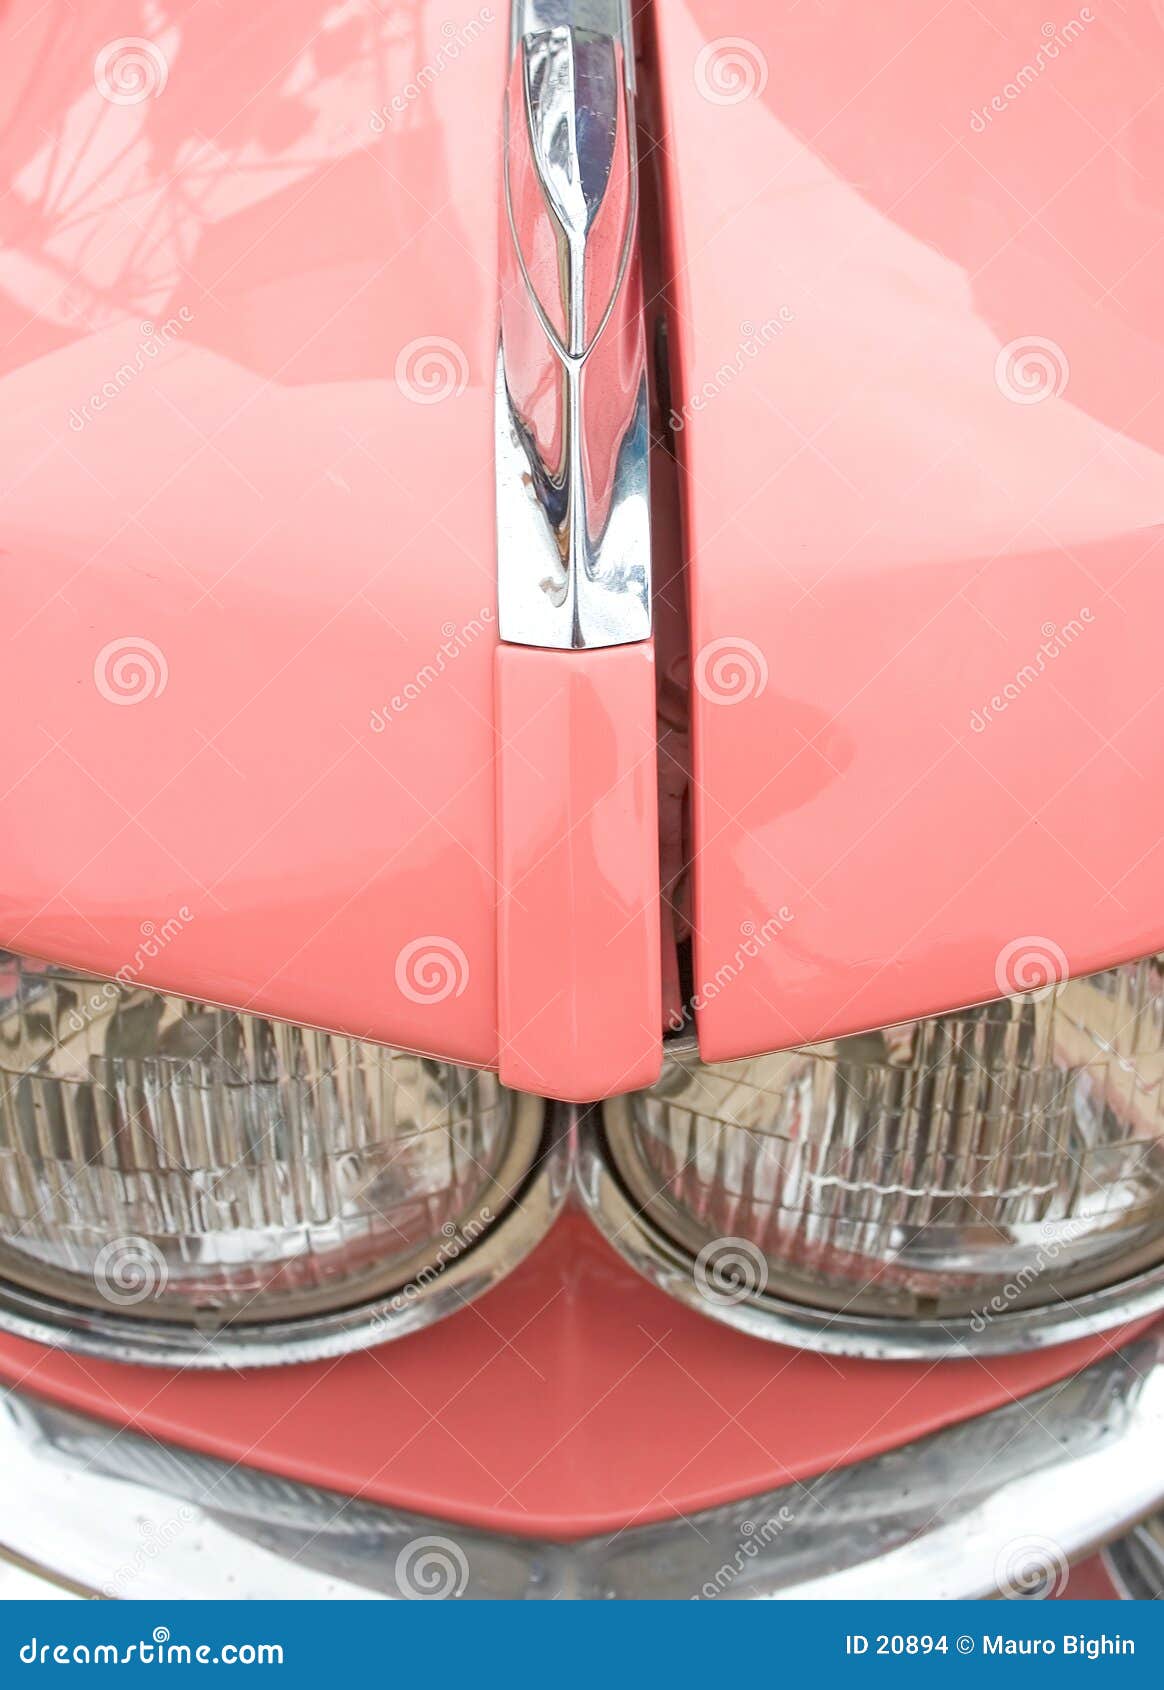 Detalle rosado del coche de los años 60